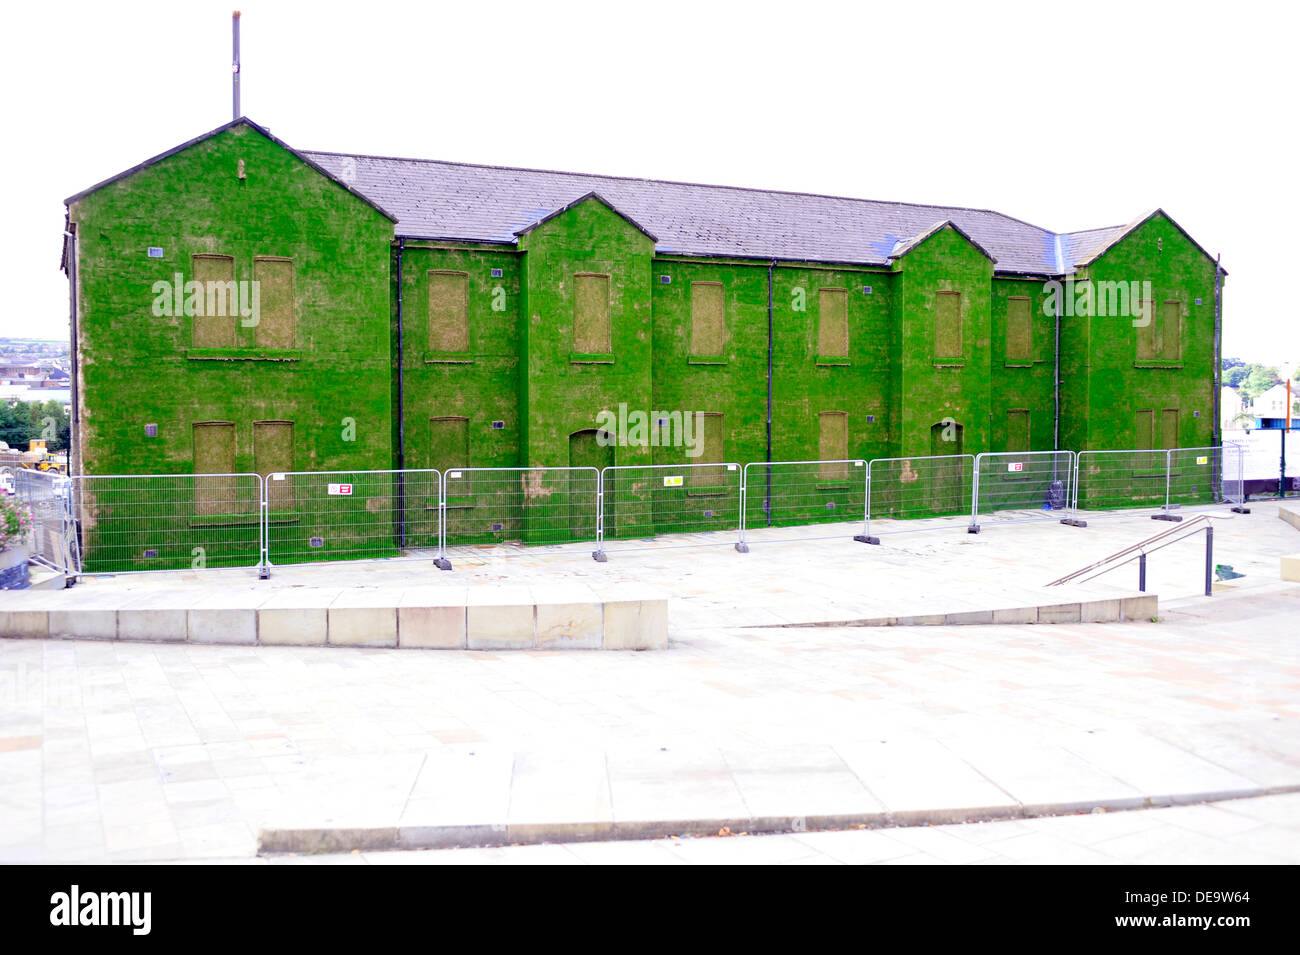 Ebrington Square, Derry, Londonderry, Irlanda del Nord, Regno Unito, 14 Sett. 2013. Un edificio storico e ex esercito britannico sposato trimestri è stata trasformata in una temporanea installazione d arte. Il dark facade di Cunningham edificio in Piazza Ebrington è stato ricoperto da milioni di sementi di erba da artista Dan Harvey e il suo partner Heather Ackroyd al numero. L'installazione, parte della città del Regno Unito la cultura del progetto, è aperta al pubblico dal 15 settembre al 27 ottobre 2013. Credito: George Sweeney / Alamy Live News. Credito: George Sweeney / Alamy Live News Foto Stock